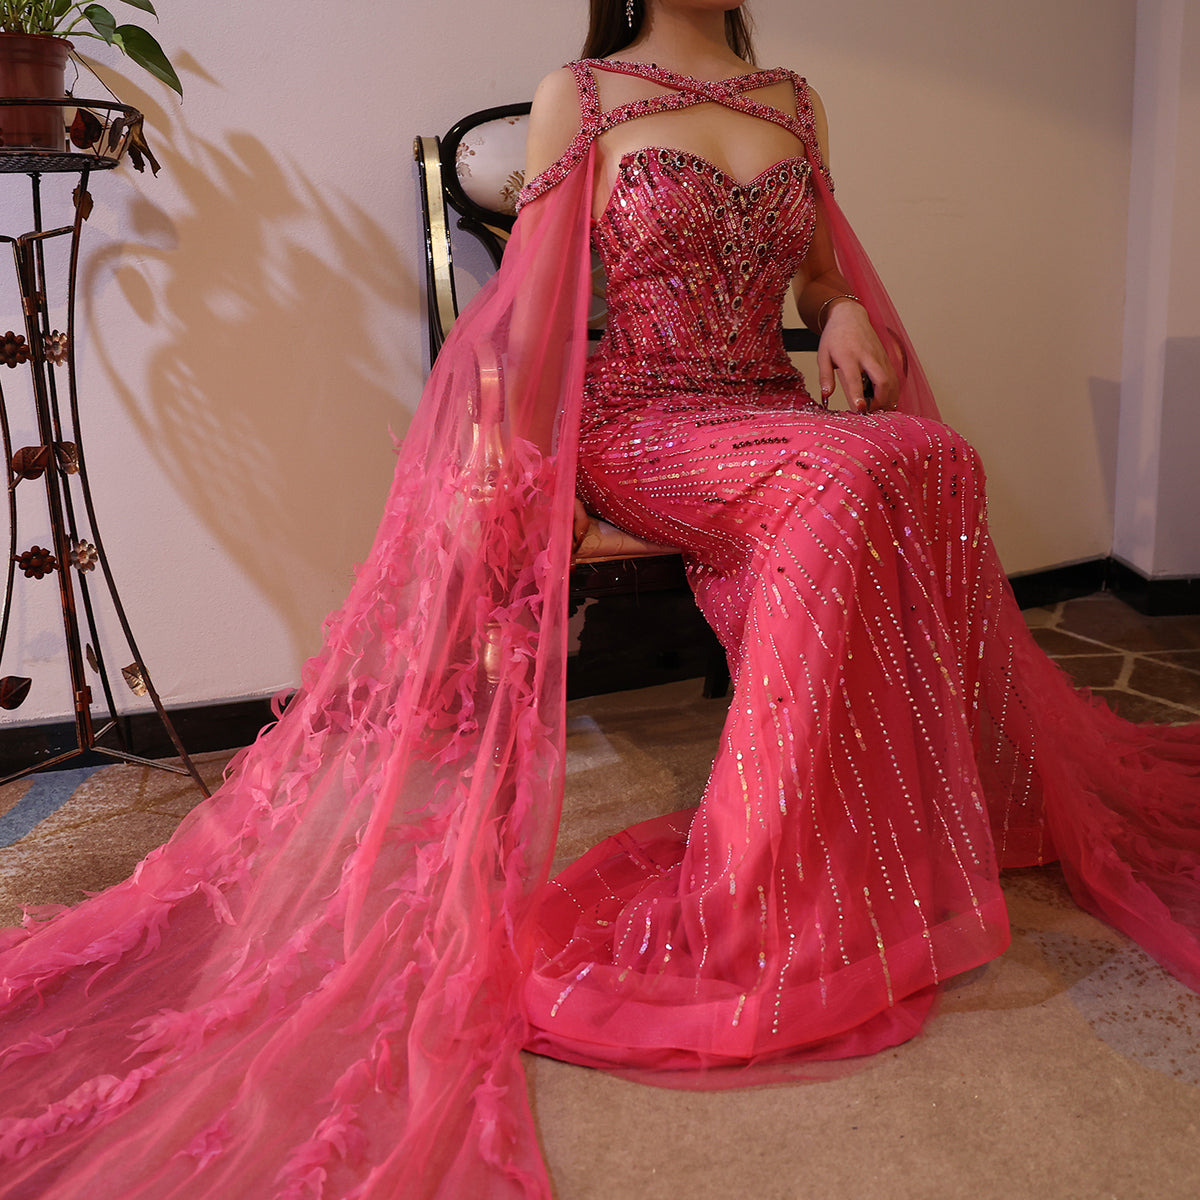 Sharon Said Arabisch Fuchsia Meerjungfrau Dubai Abendkleider mit Cape-Ärmeln Luxus Kristall Türkis Frauen Hochzeit Party Kleid SS468